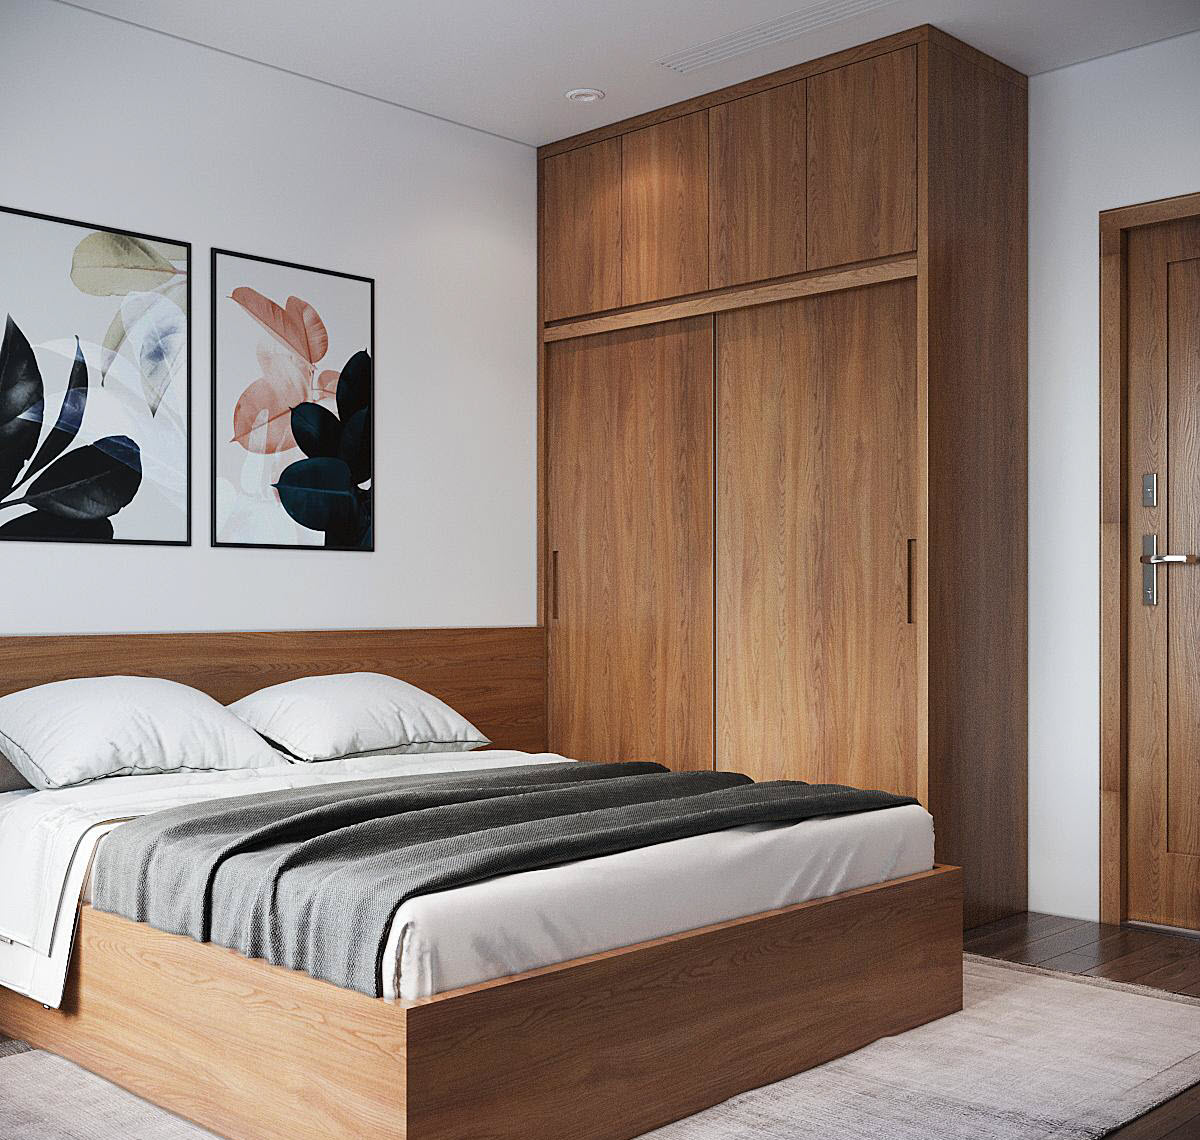 Nội thất phòng ngủ được "đo ni đóng giày" vừa vặn với diện tích phòng nhằm tối ưu hóa không gian sử dụng trong căn hộ diện tích trung bình.